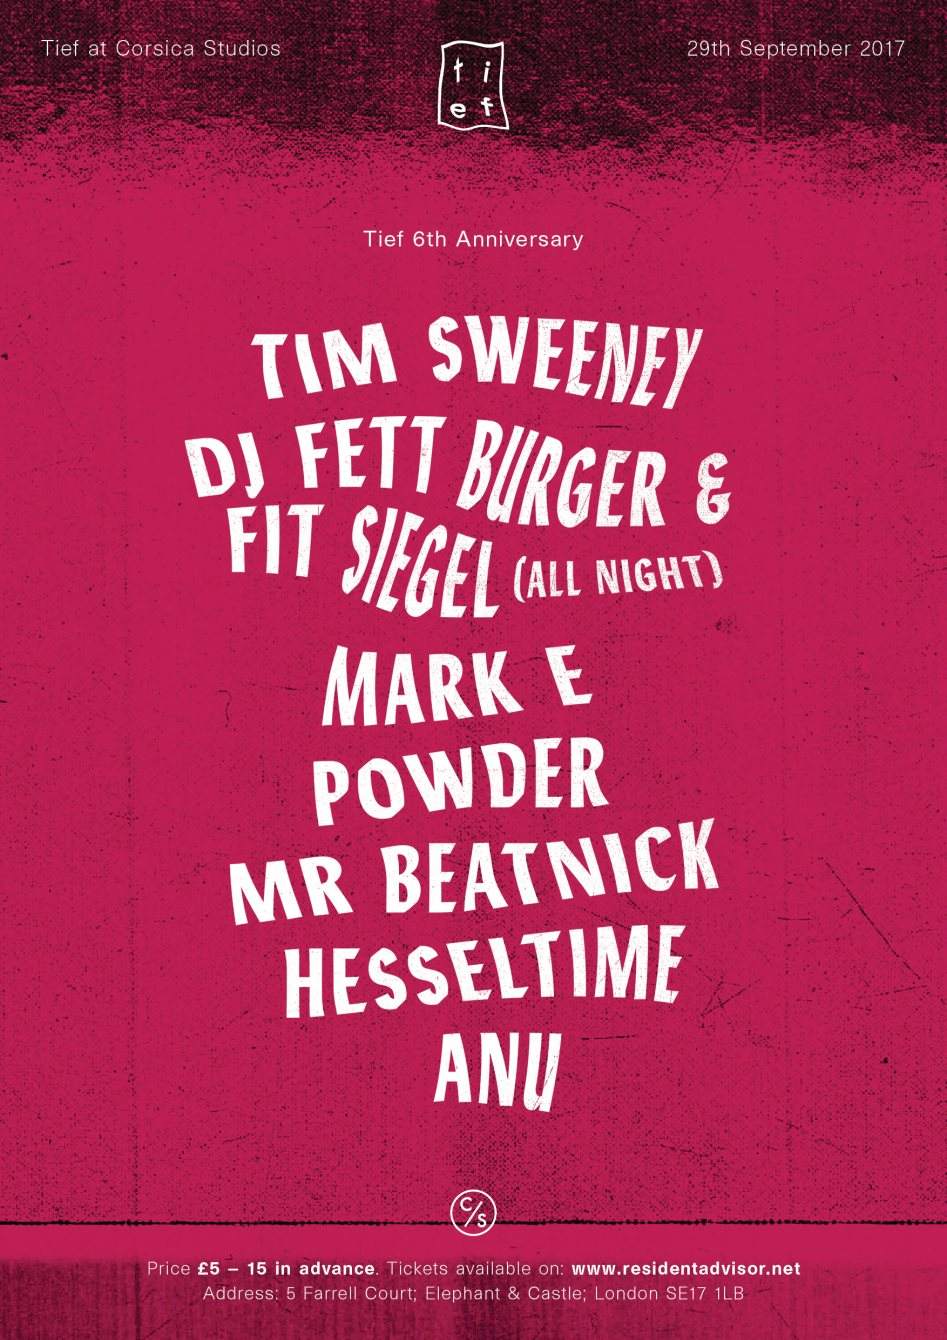 Tief 6th Anniversary with DJ Fett Burger, Tim Sweeney, Powder, FIT Siegel & Much More - フライヤー表